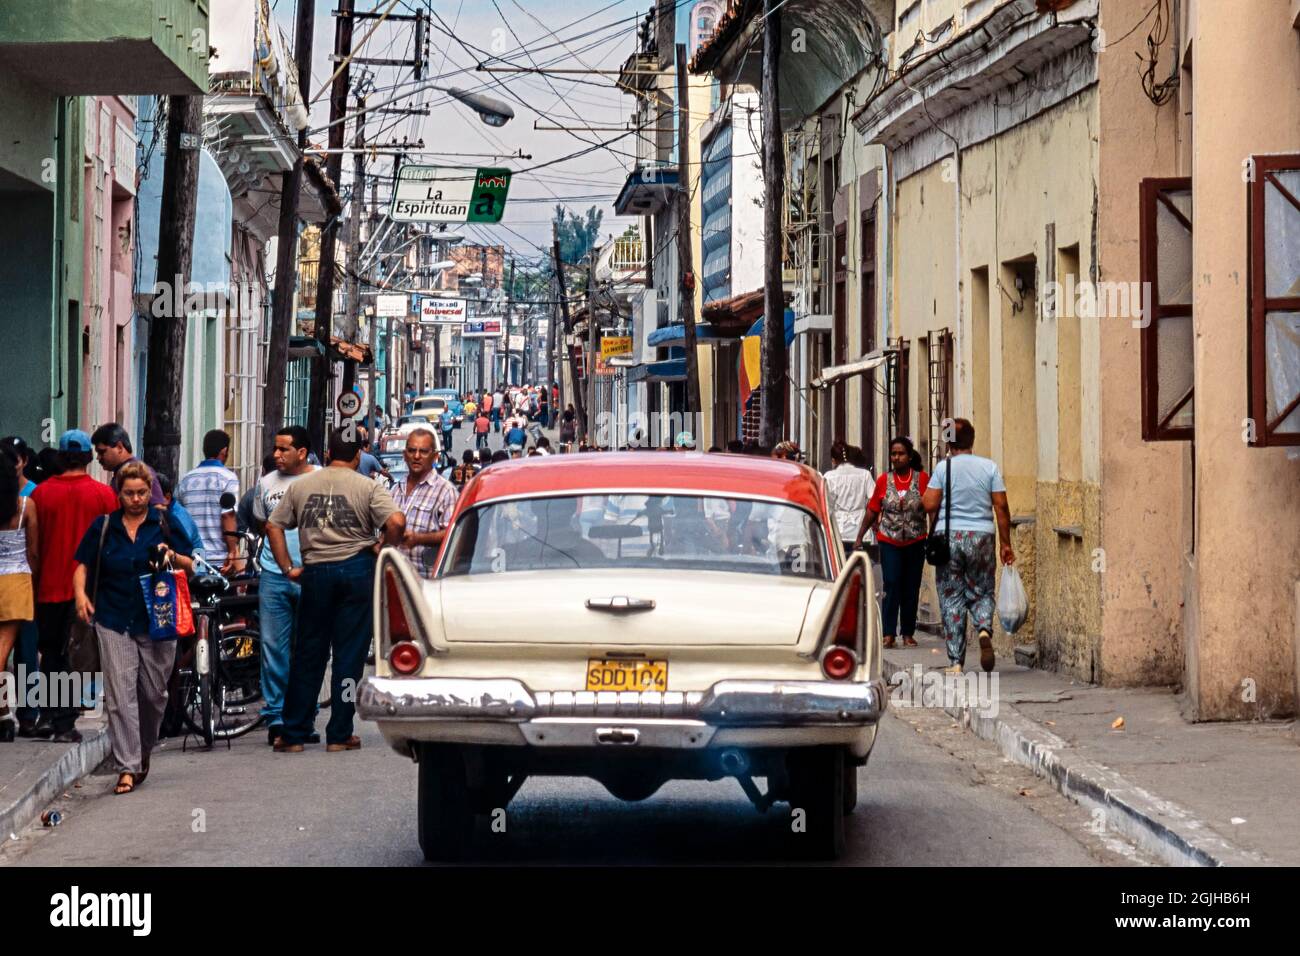 Voiture américaine classique avec des ailerons passant devant des piétons dans le centre-ville, Sancti Spiritus, Cuba Banque D'Images